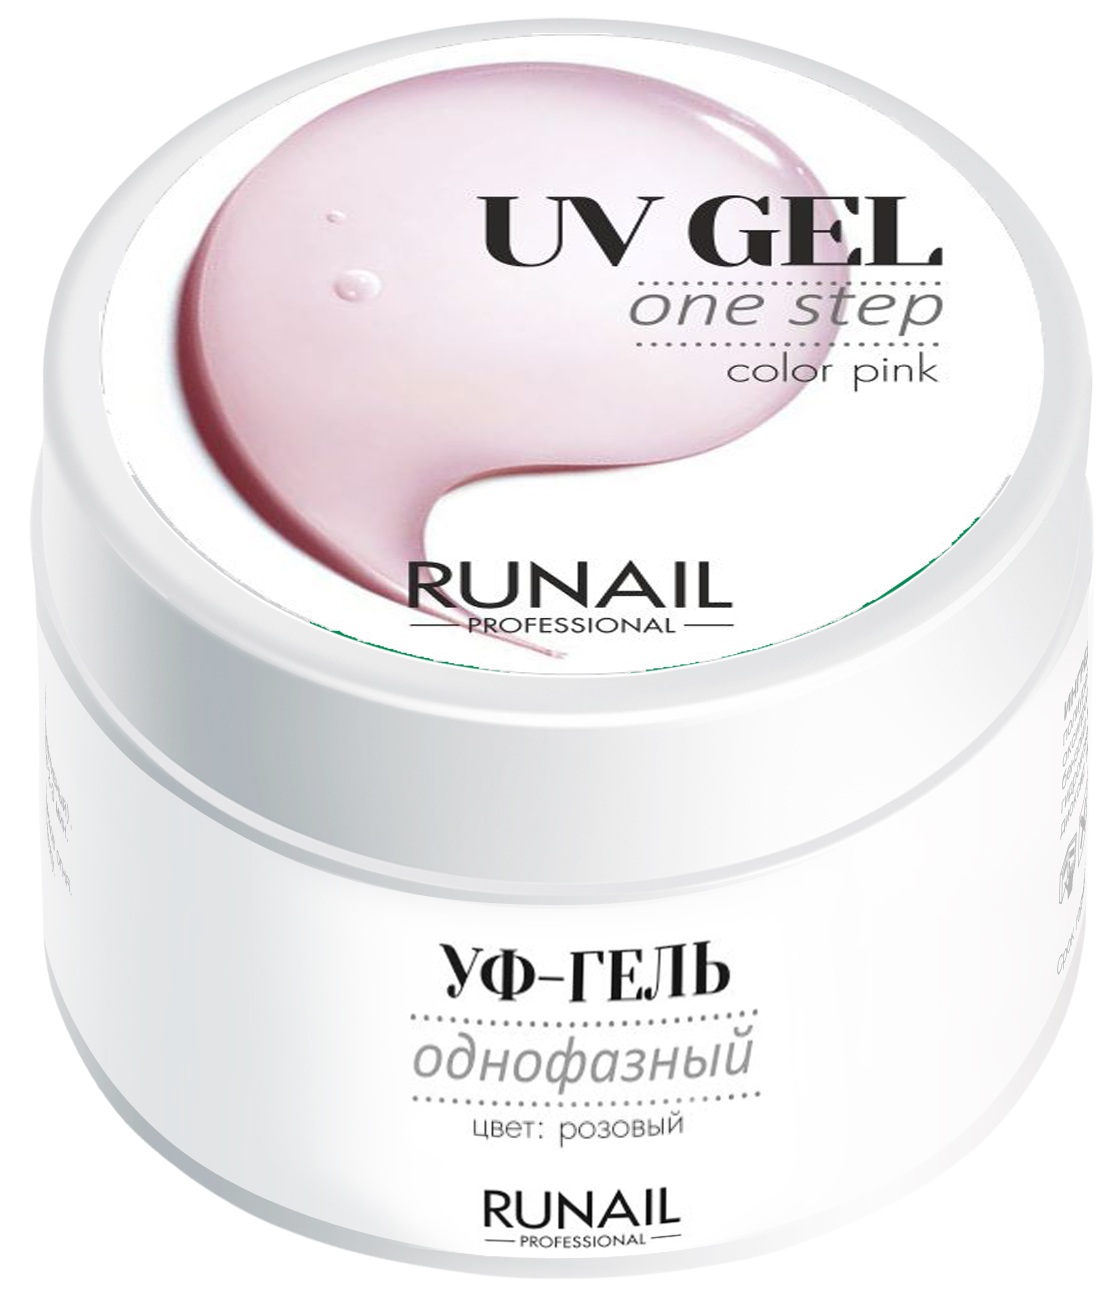 Однофазный УФ-гель RuNail Professional 3444  (цвет: Розовый), 15 г